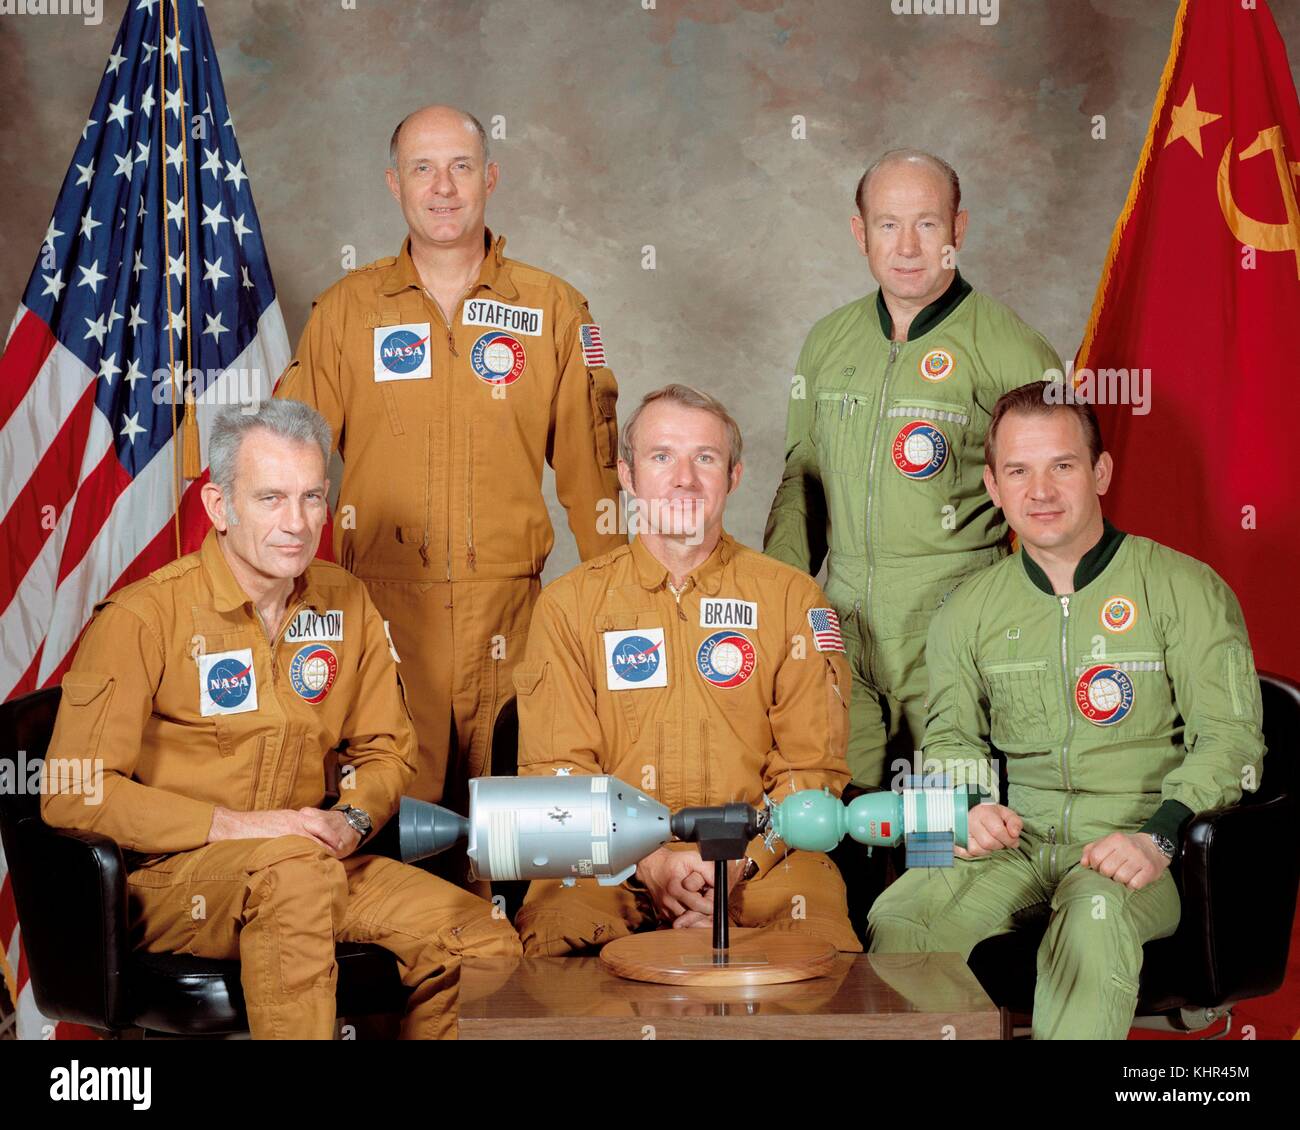 Die APOLLO-SOJUS Crew, von links: amerikanische Astronauten "Meke" slayton, Tom Stafford, vance Brand, russische Kosmonauten Aleksej Leonov, valerij Kubassow posieren für ein Gruppenfoto am Johnson Space Center in Houston, Texas. Die Mission ist zu zeigen, dass zwei verschiedene Raumfahrzeug Dock im Raum. (Foto von der Nasa über planetpix) (Foto von der Nasa über planetpix) Stockfoto